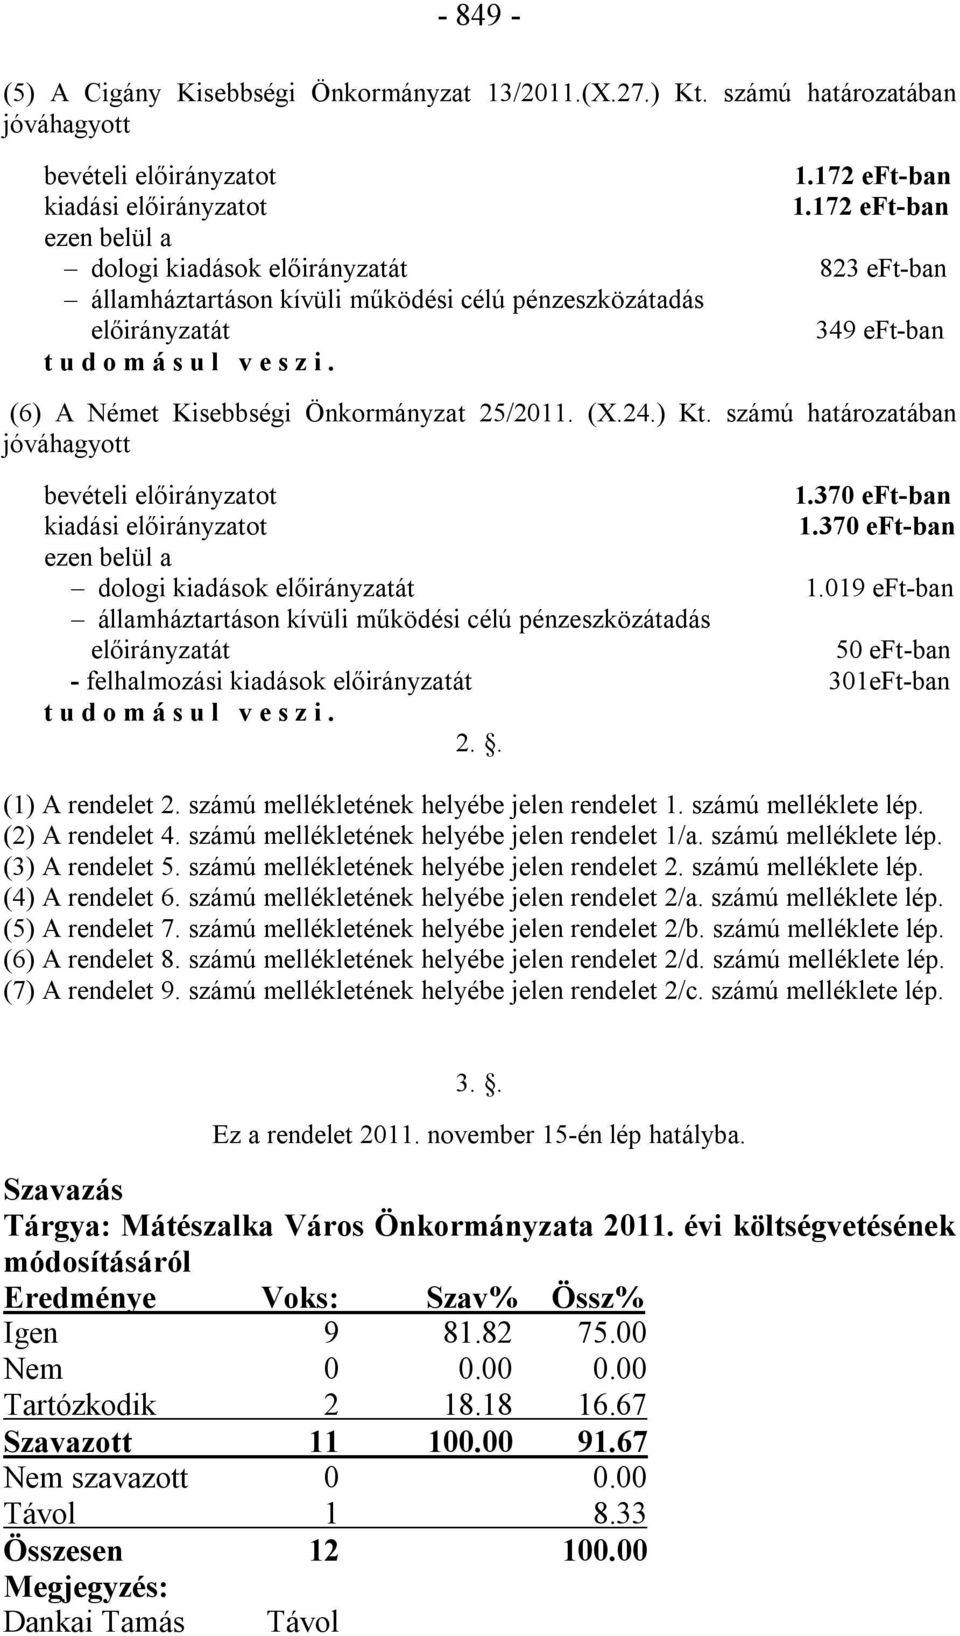 (6) A Német Kisebbségi Önkormányzat 25/2011. (X.24.) Kt. számú határozatában jóváhagyott bevételi előirányzatot 1.370 eft-ban kiadási előirányzatot 1.